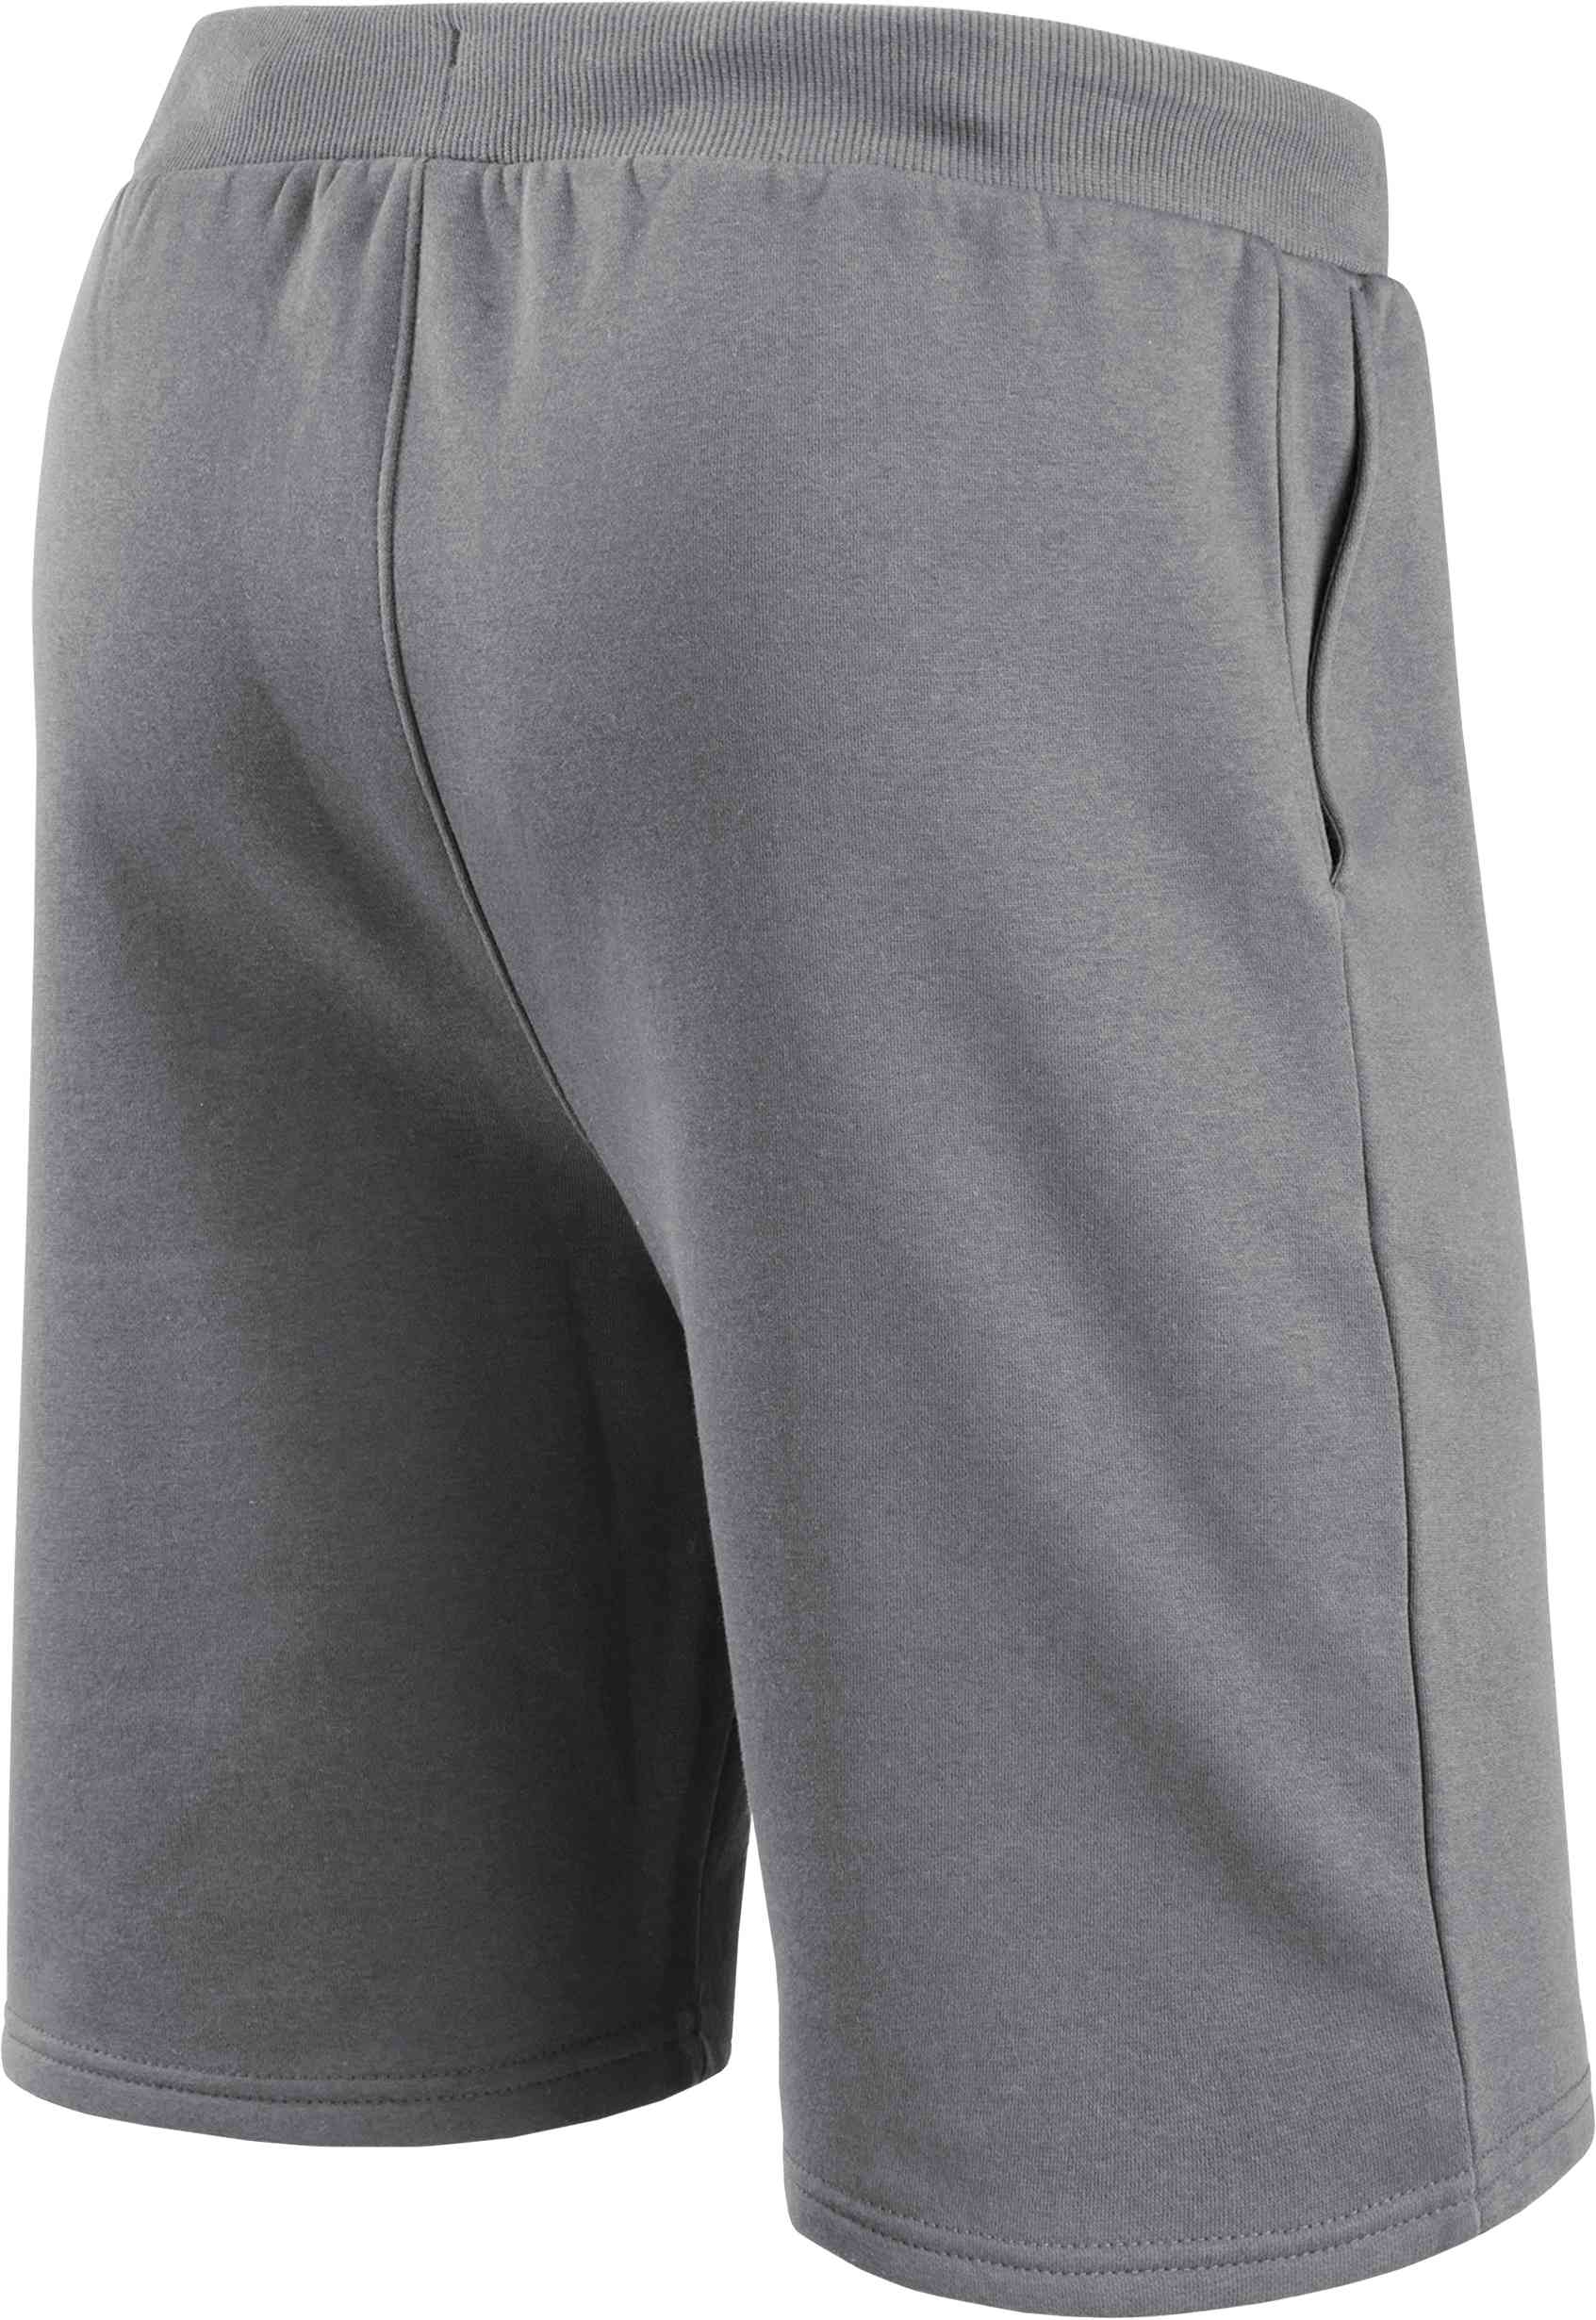 Fanatics - NFL Green Bay Packers Primary Logo Fleece Shorts